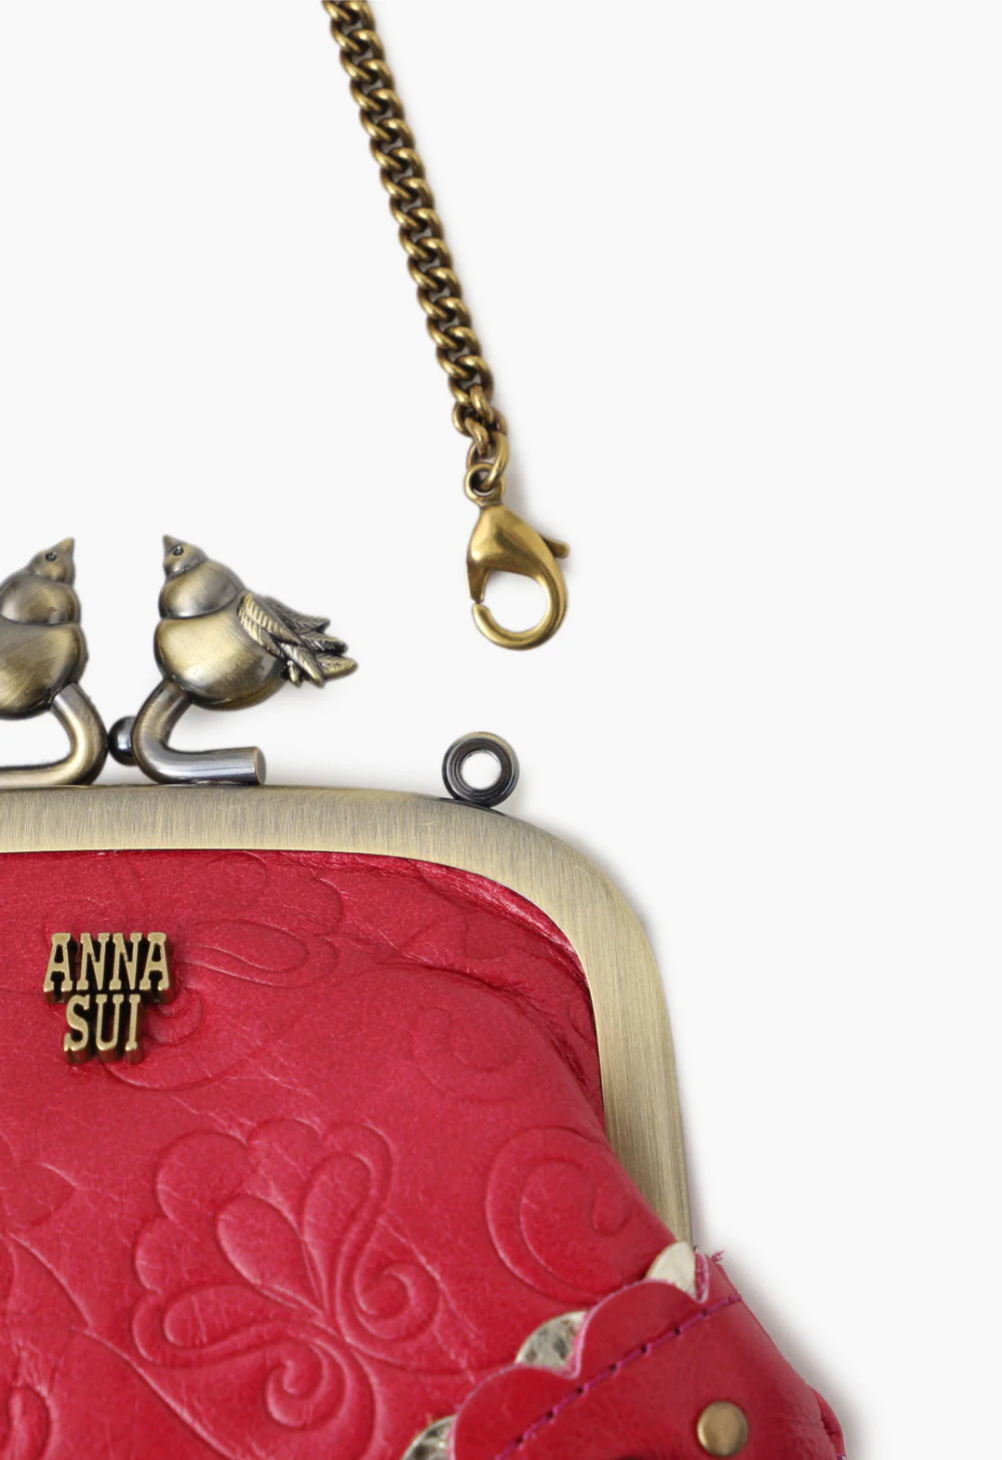 Anna Sui Floral Coin Change Purse, Vintage Wallet Purse - Etsy Canada |  Change purse, Purses, Purse wallet